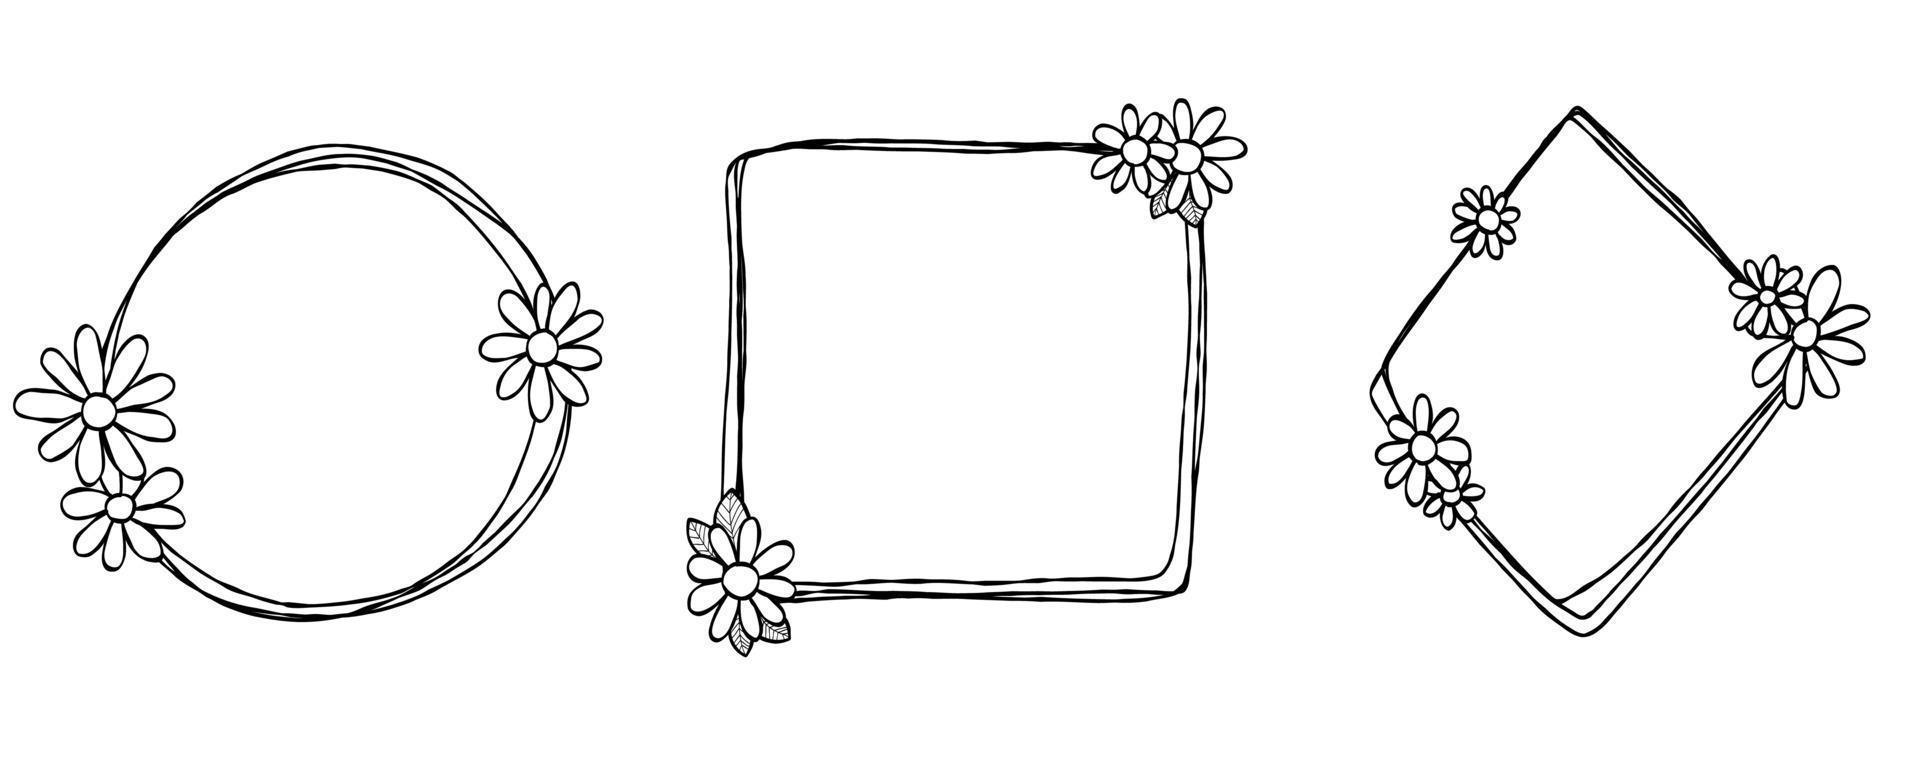 Gekritzelrahmen setzen Hand gezeichnet. Raute, Quadrat, Kreislinien mit Blumen, Blättern. valentinstag, für hochzeit isoliert. vektor